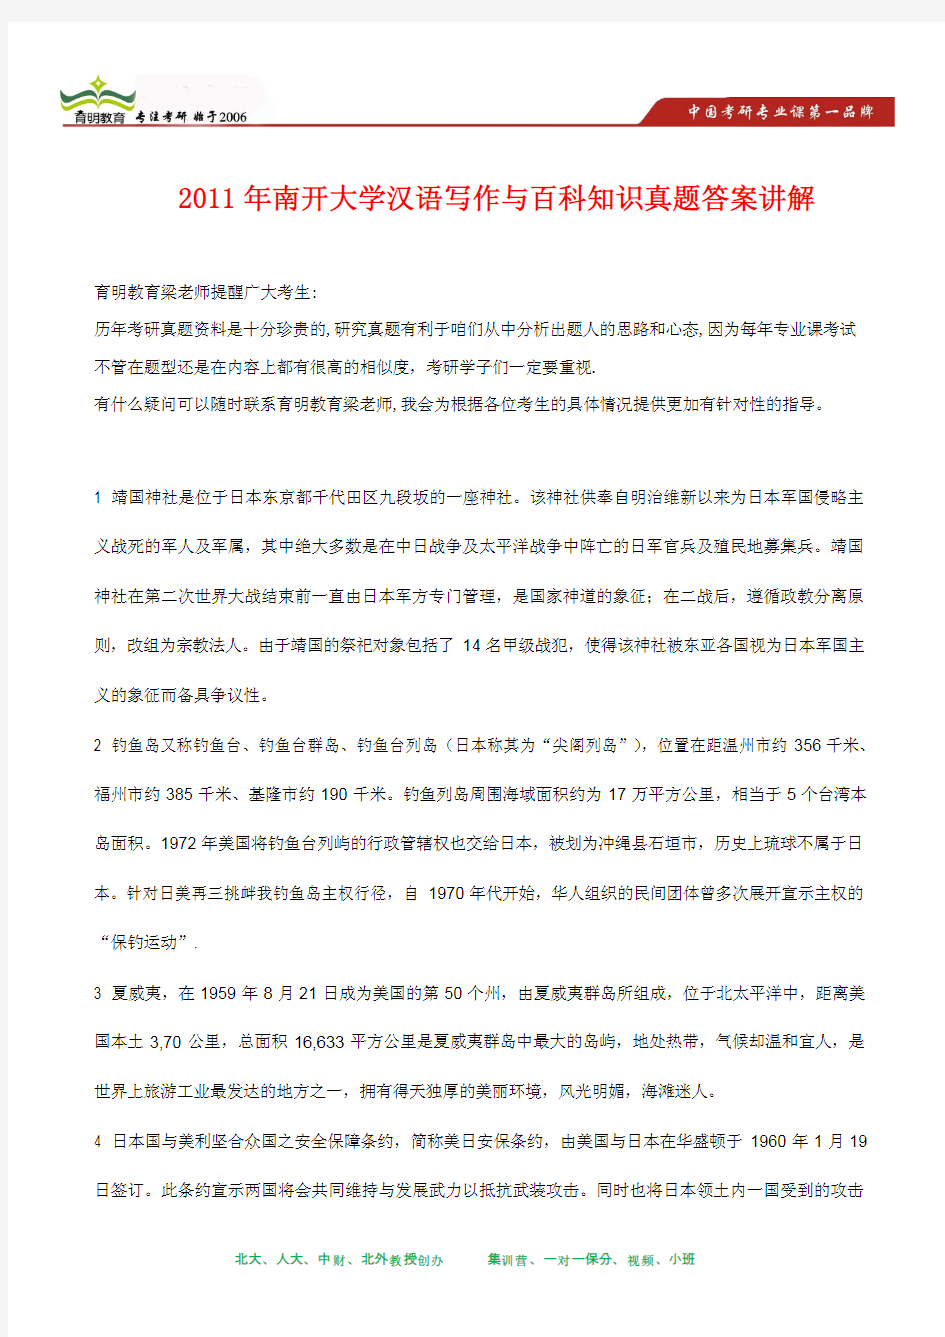 2011年南开大学汉语写作与百科知识考研真题及其答案解析